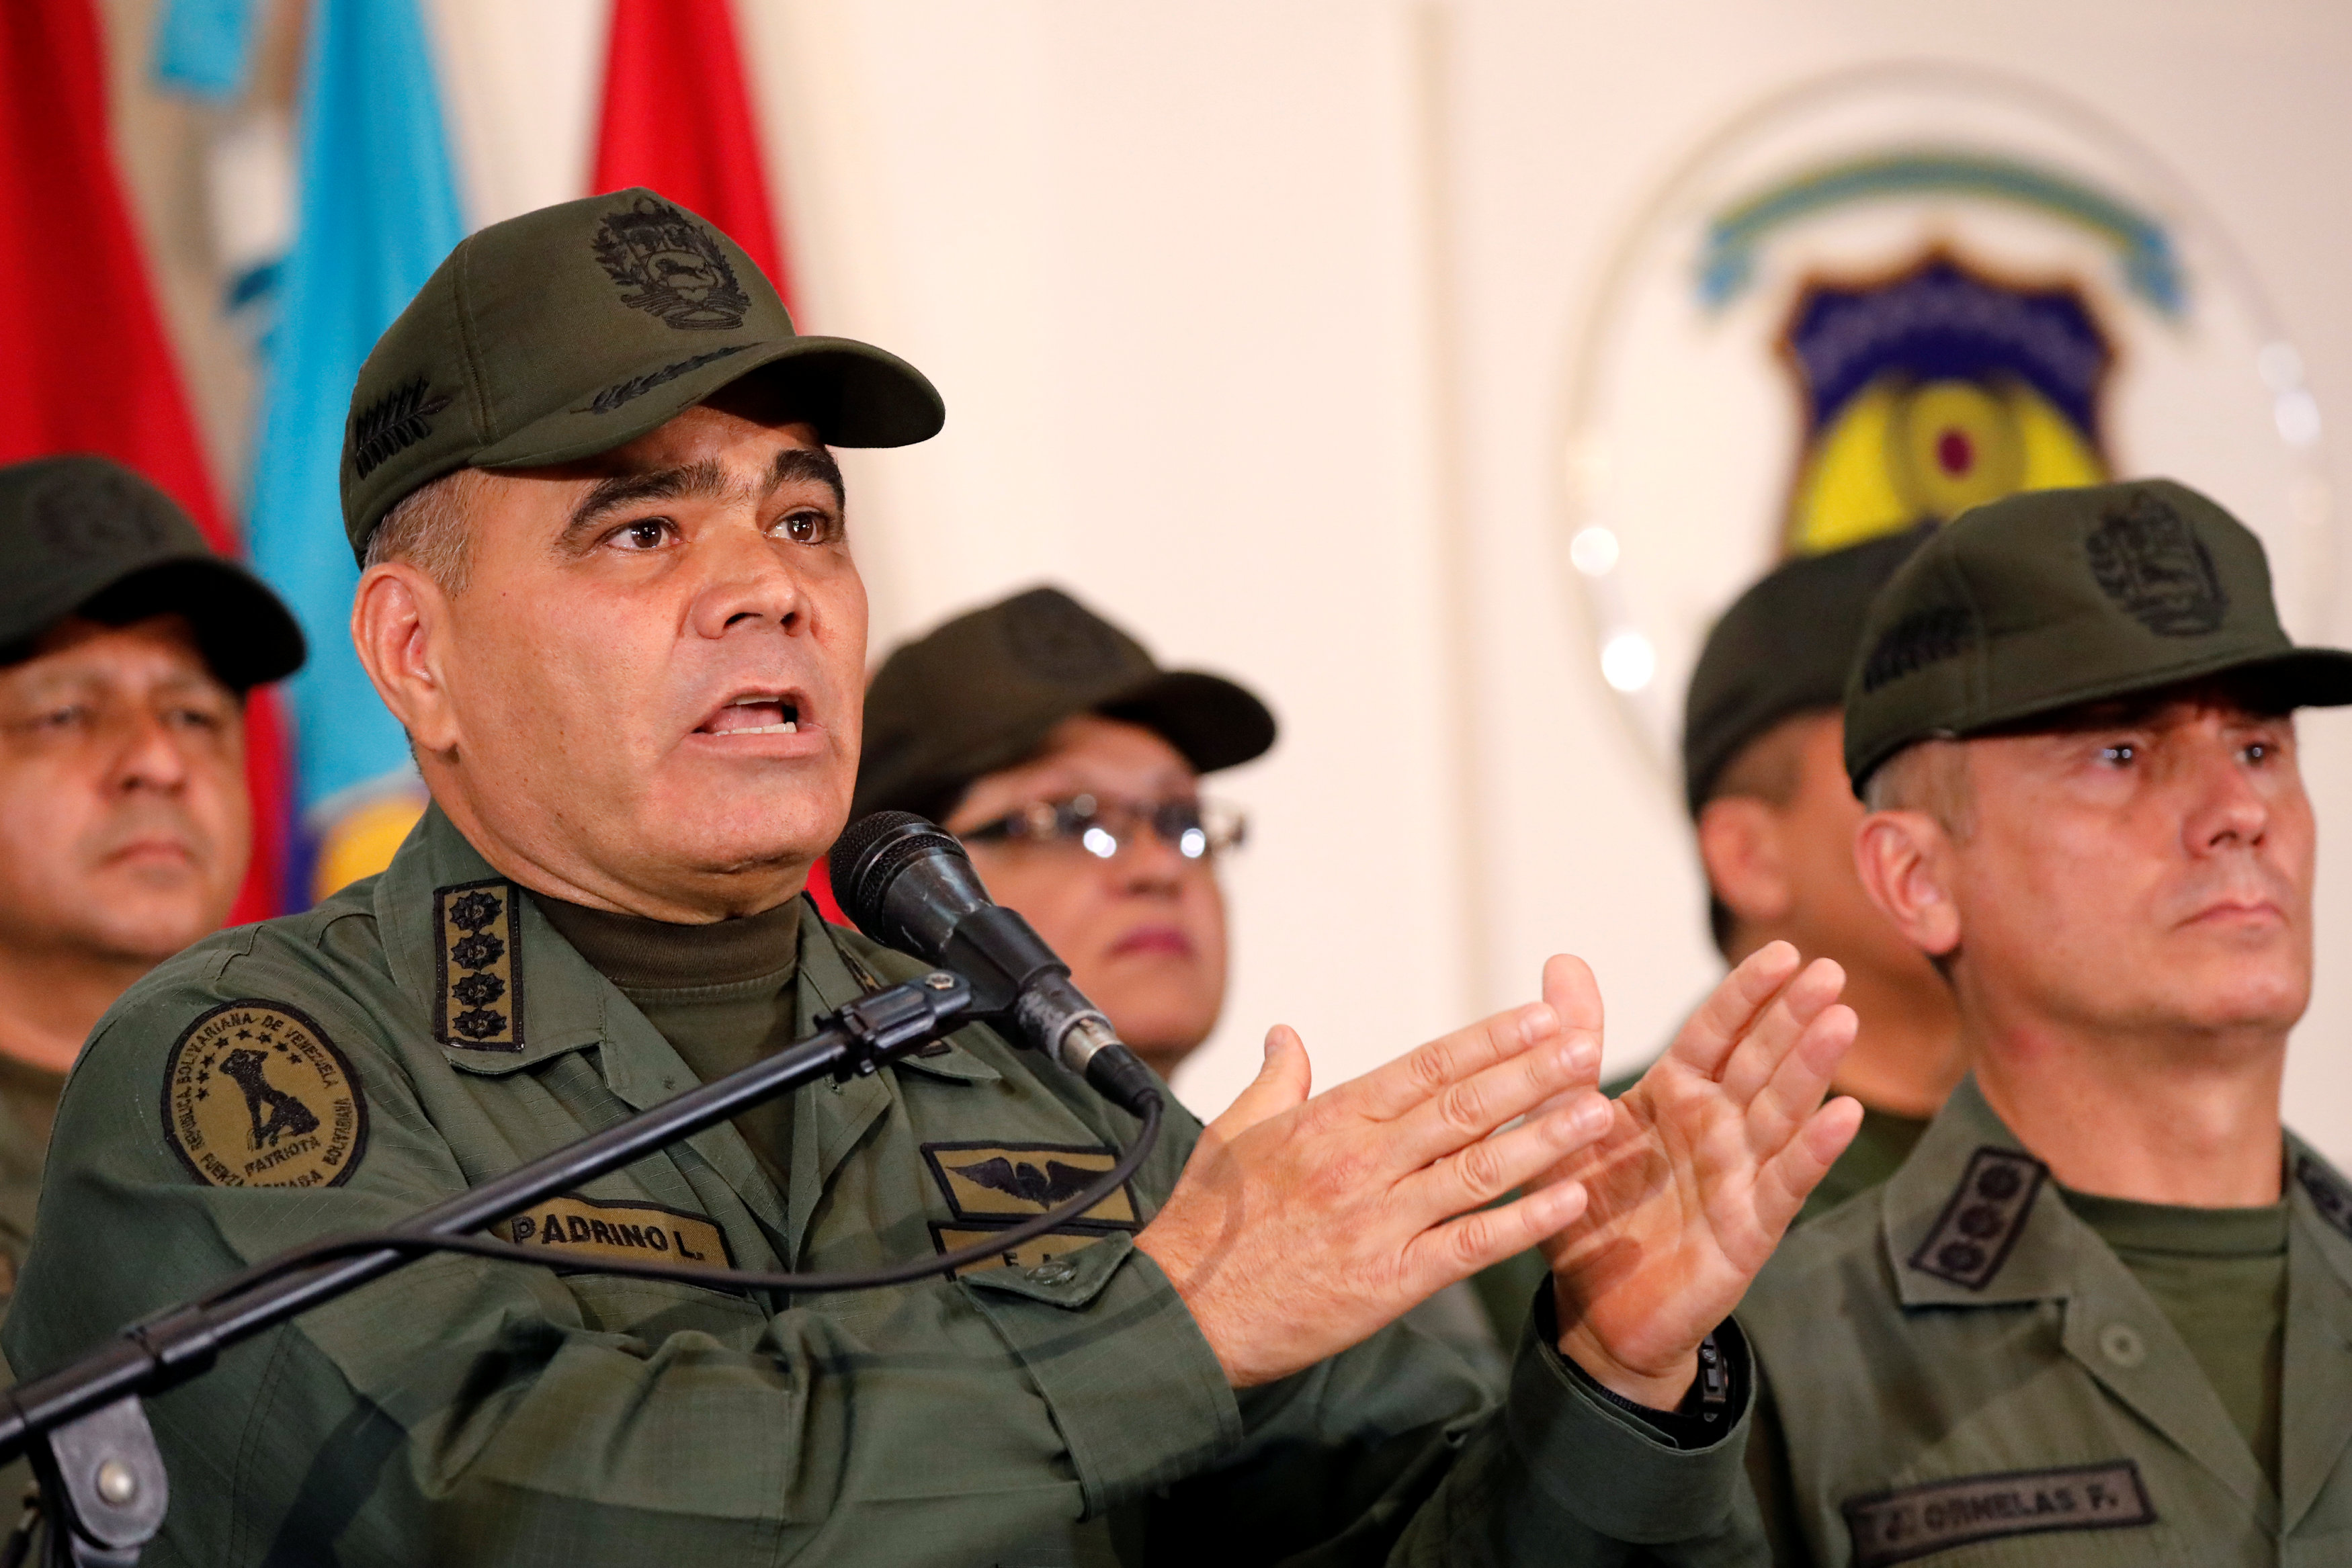 Mientras un soldado venezolano mata a otro en la frontera, la alta oficialidad se distrae con discursos políticos